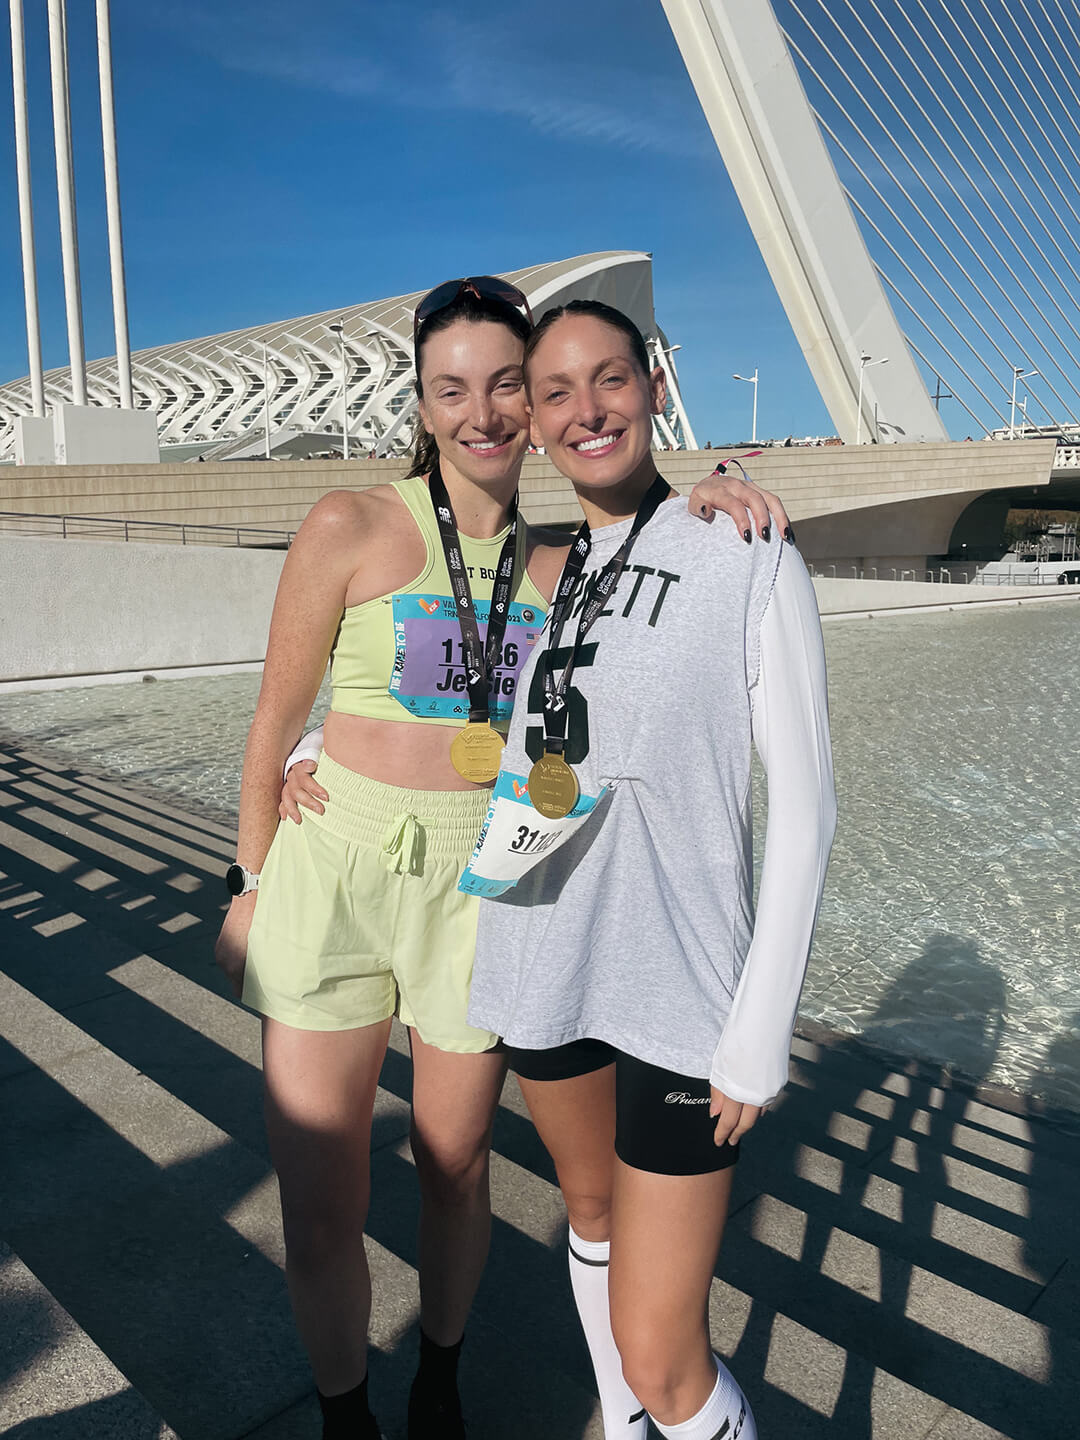 Pruzan founders Jessie and Lexy at Valencia Marathon